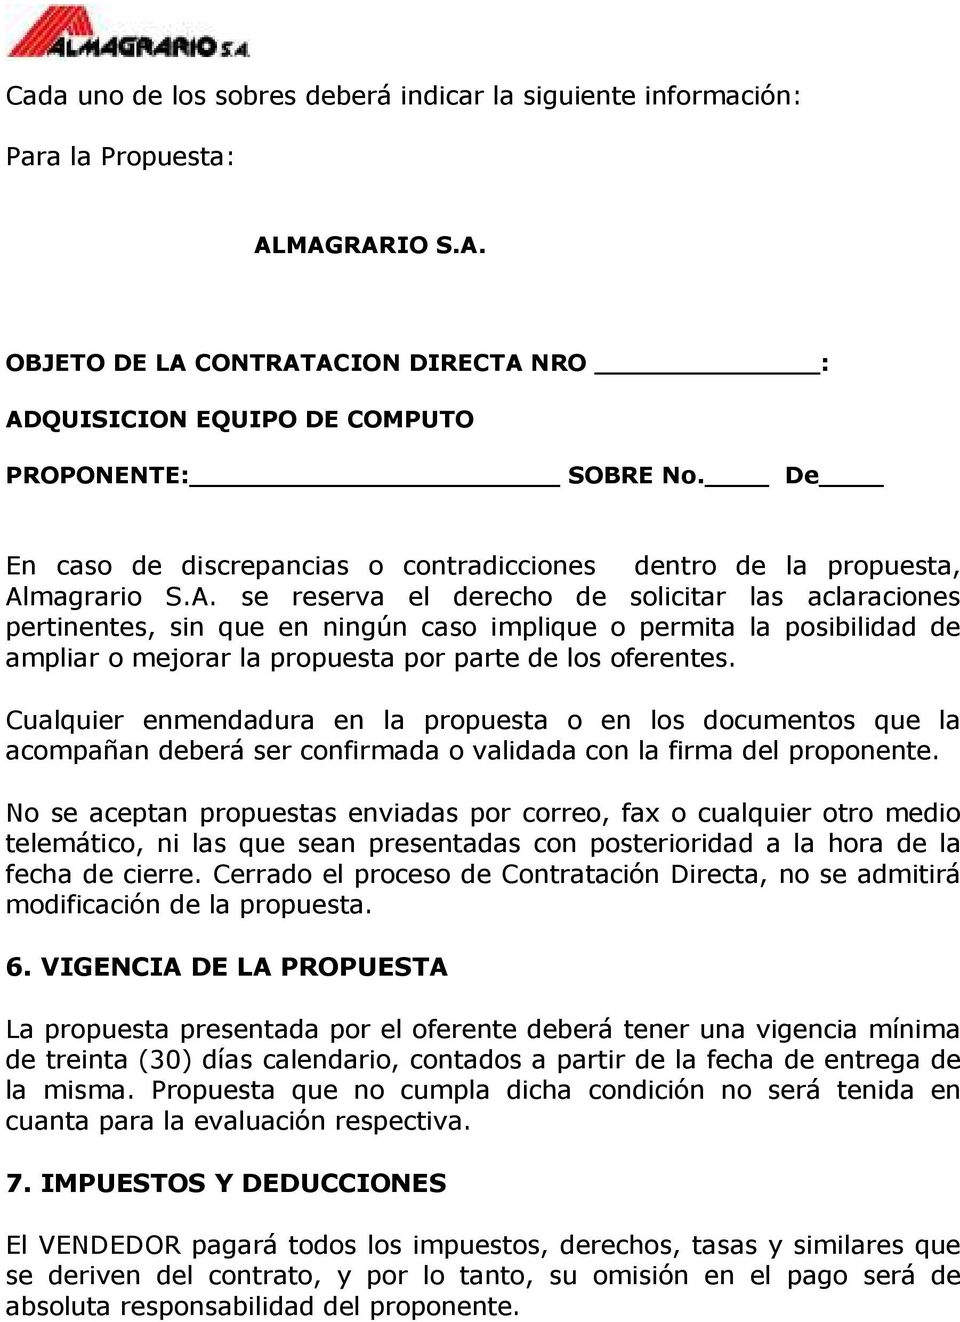 magrario S.A. se reserva el derecho de solicitar las aclaraciones pertinentes, sin que en ningún caso implique o permita la posibilidad de ampliar o mejorar la propuesta por parte de los oferentes.